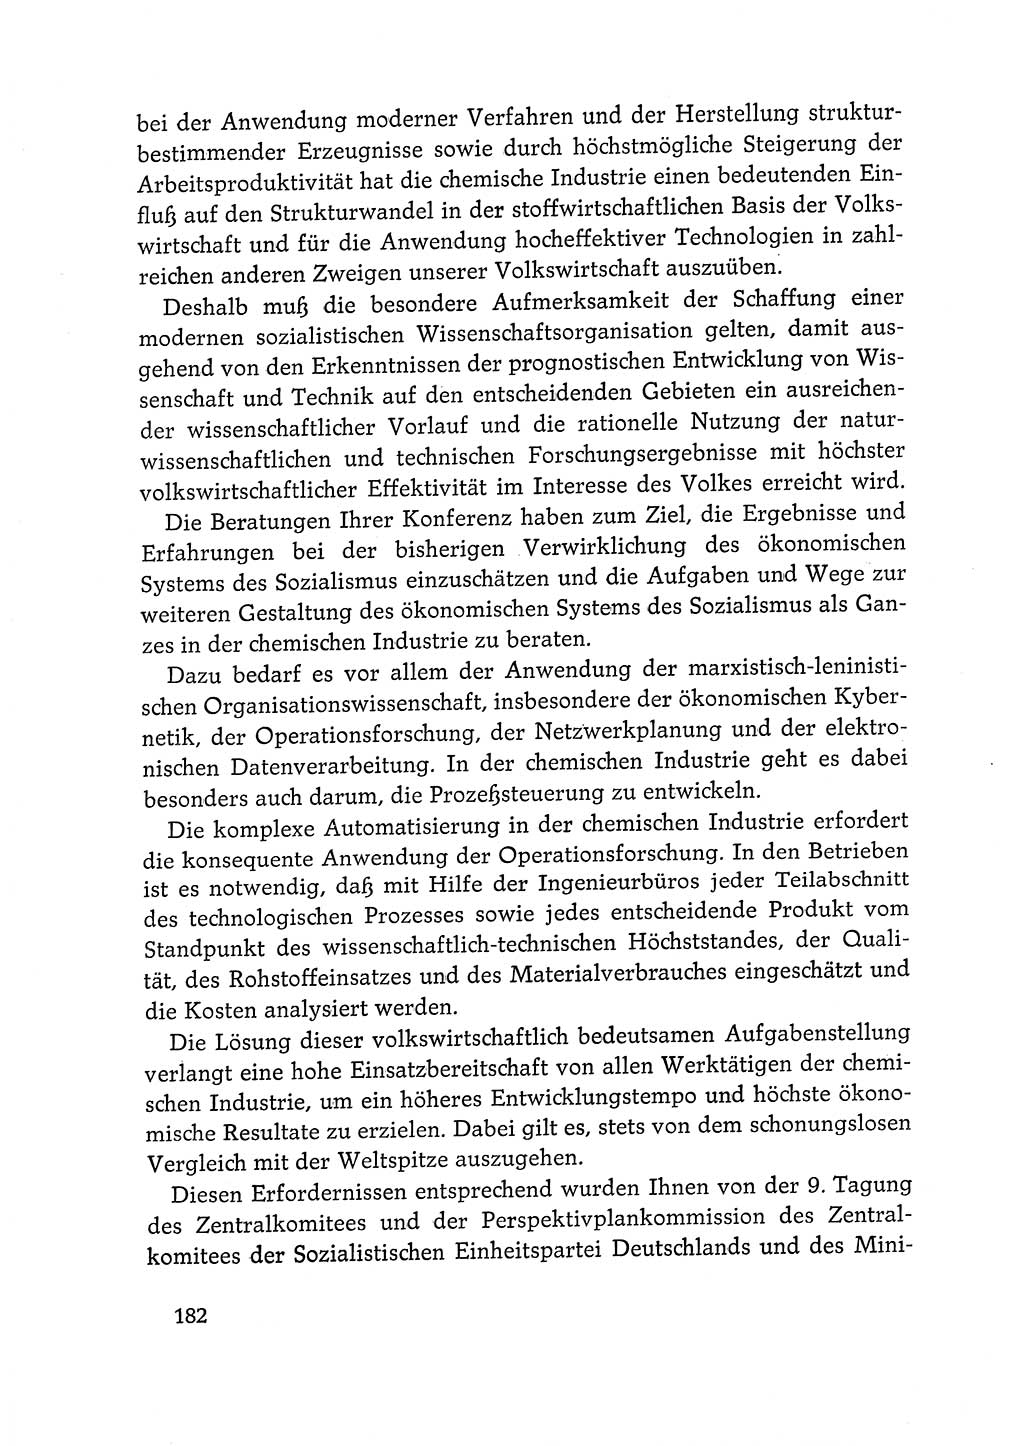 Dokumente der Sozialistischen Einheitspartei Deutschlands (SED) [Deutsche Demokratische Republik (DDR)] 1968-1969, Seite 182 (Dok. SED DDR 1968-1969, S. 182)